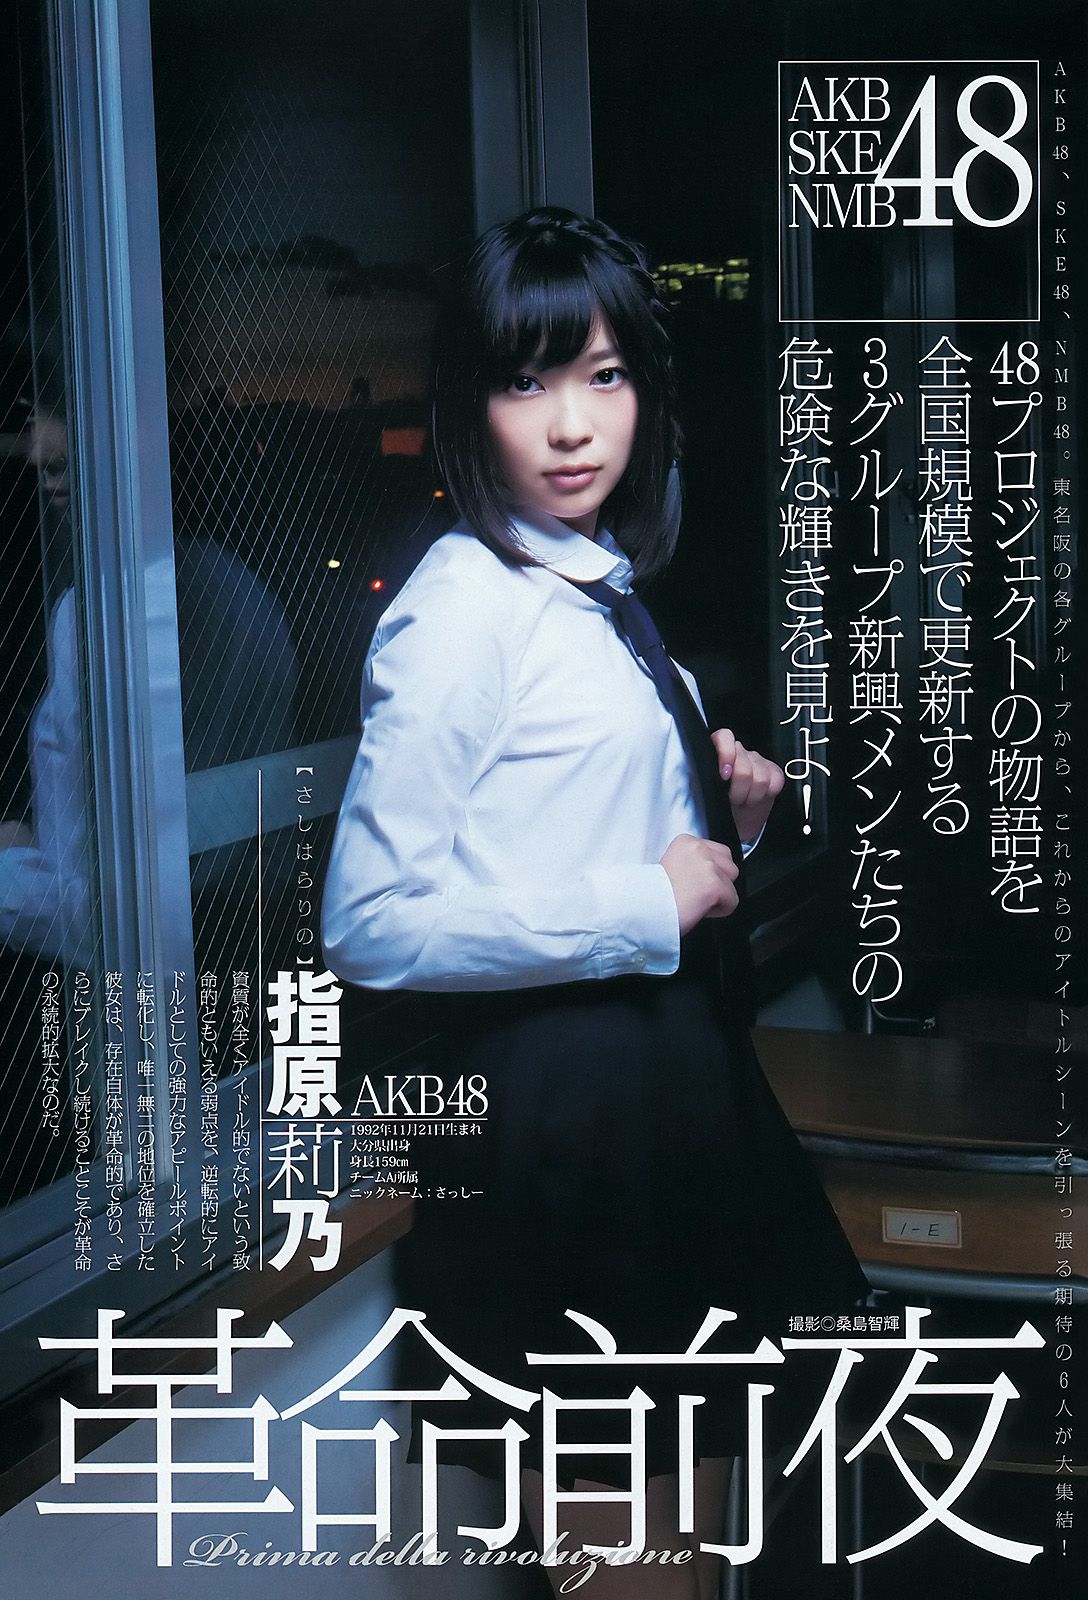 AKB48 NMB48 SKE48 仮面ライダーGIRLS [週刊ヤングジャンプ] 2012年No.04-05写真杂志